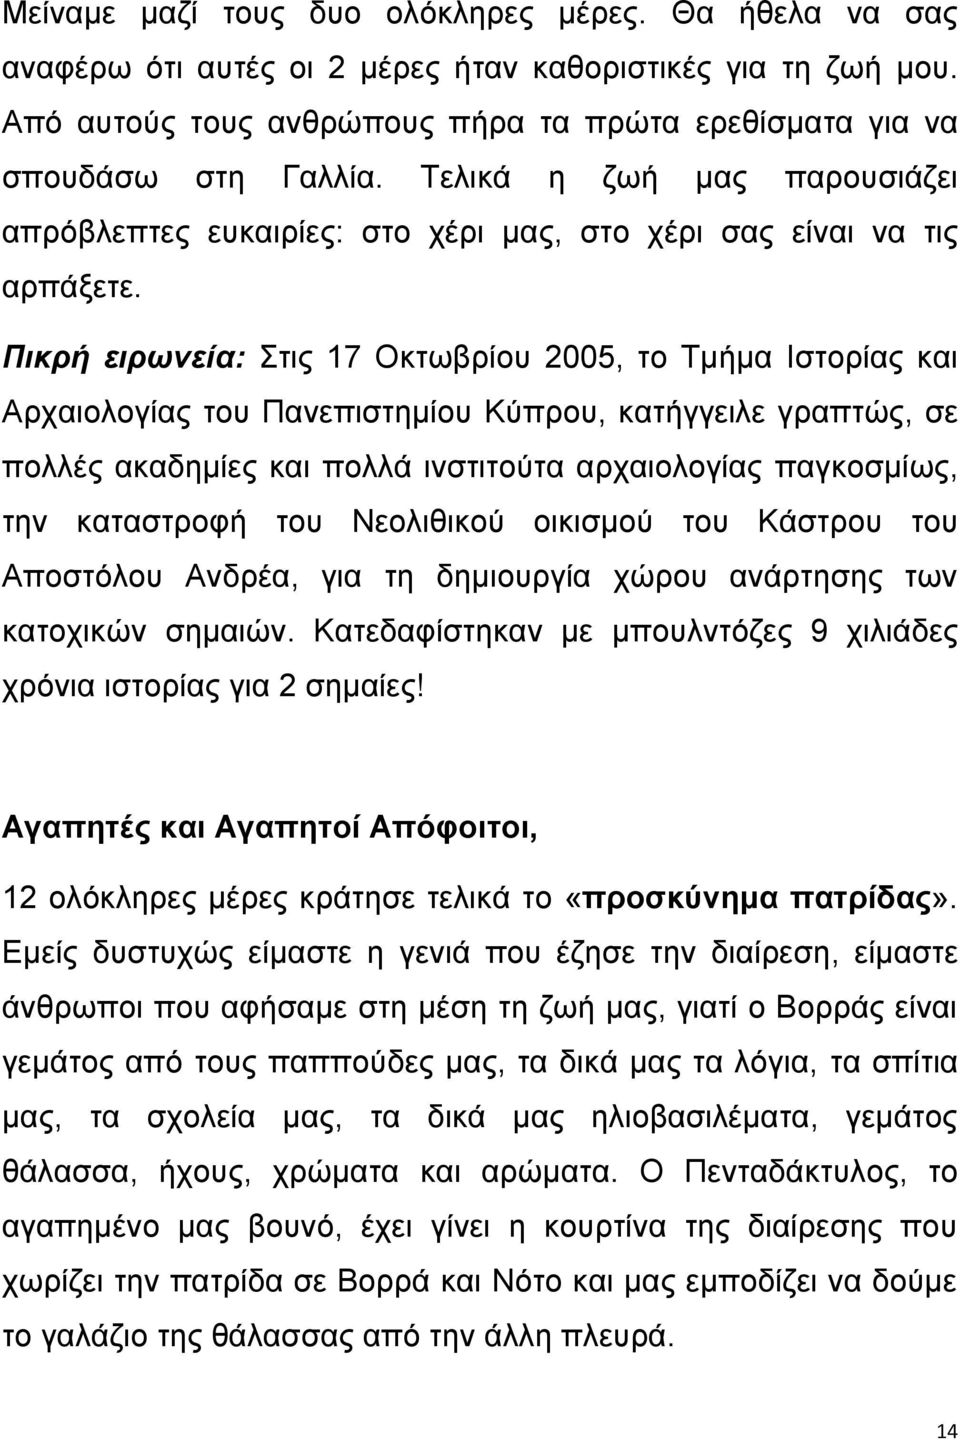 Πικρή ειρωνεία: Στις 17 Οκτωβρίου 2005, το Τμήμα Ιστορίας και Αρχαιολογίας του Πανεπιστημίου Κύπρου, κατήγγειλε γραπτώς, σε πολλές ακαδημίες και πολλά ινστιτούτα αρχαιολογίας παγκοσμίως, την